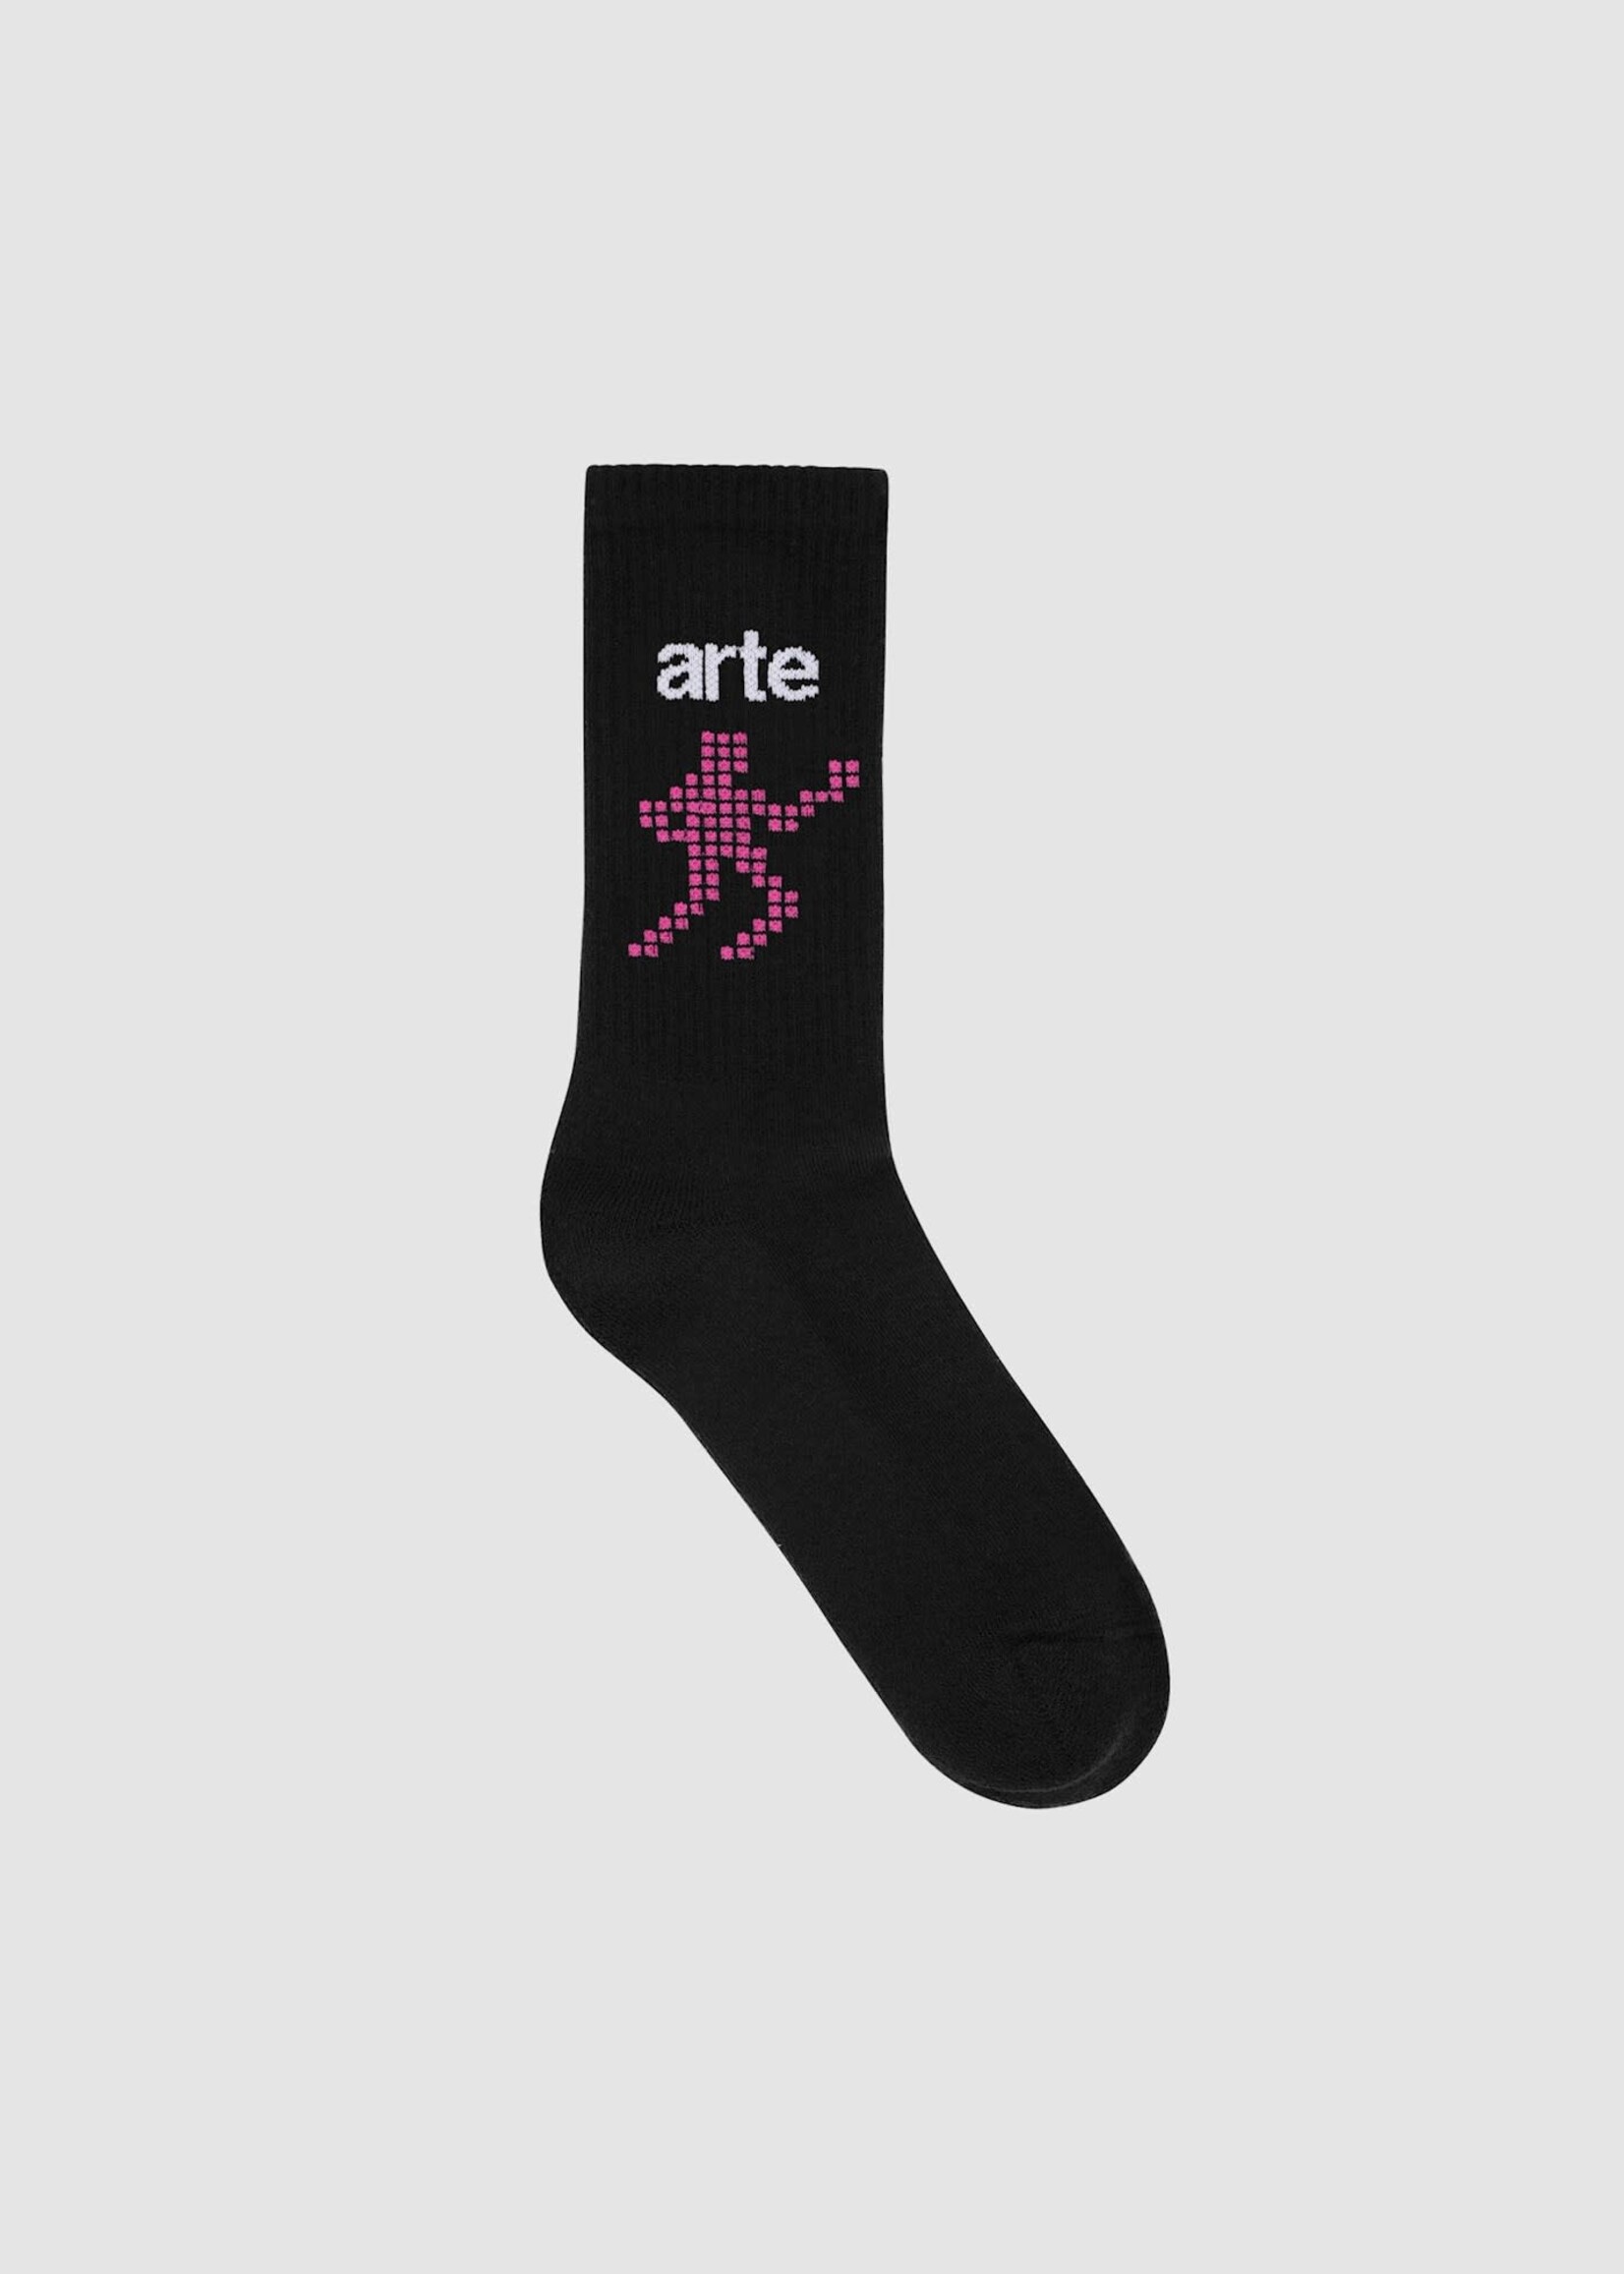 Arte Arte Runner socks black